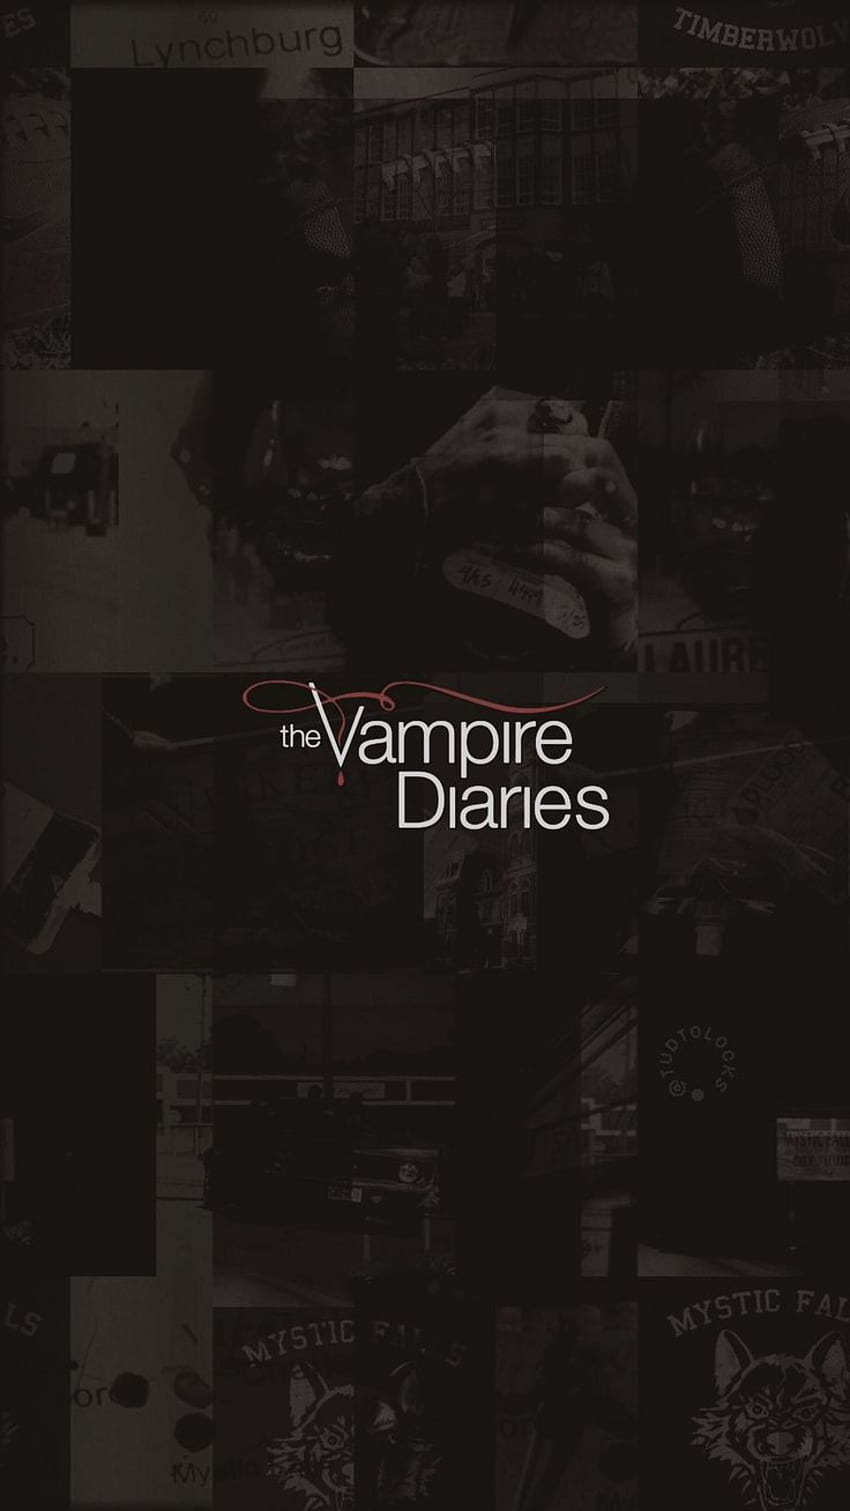 The vampire diaries wallpaper - Vampire